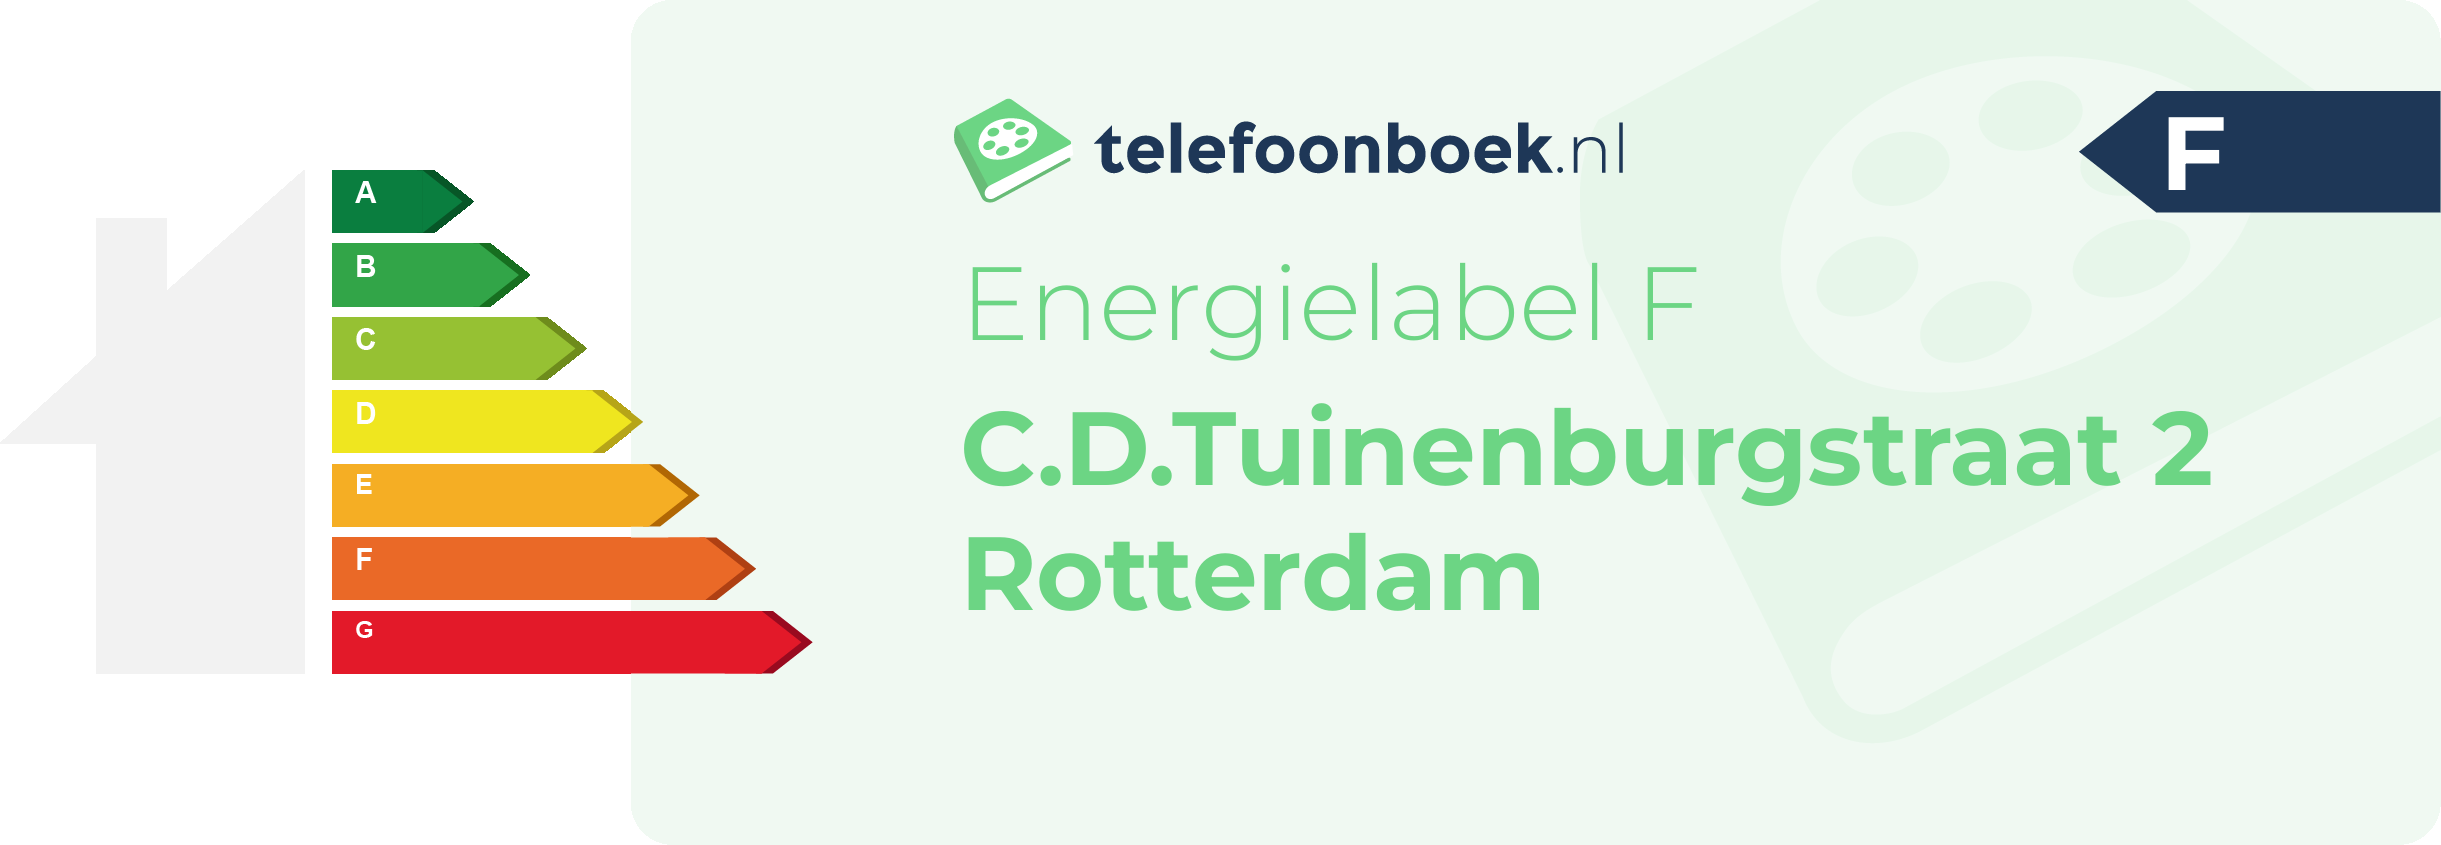 Energielabel C.D.Tuinenburgstraat 2 Rotterdam